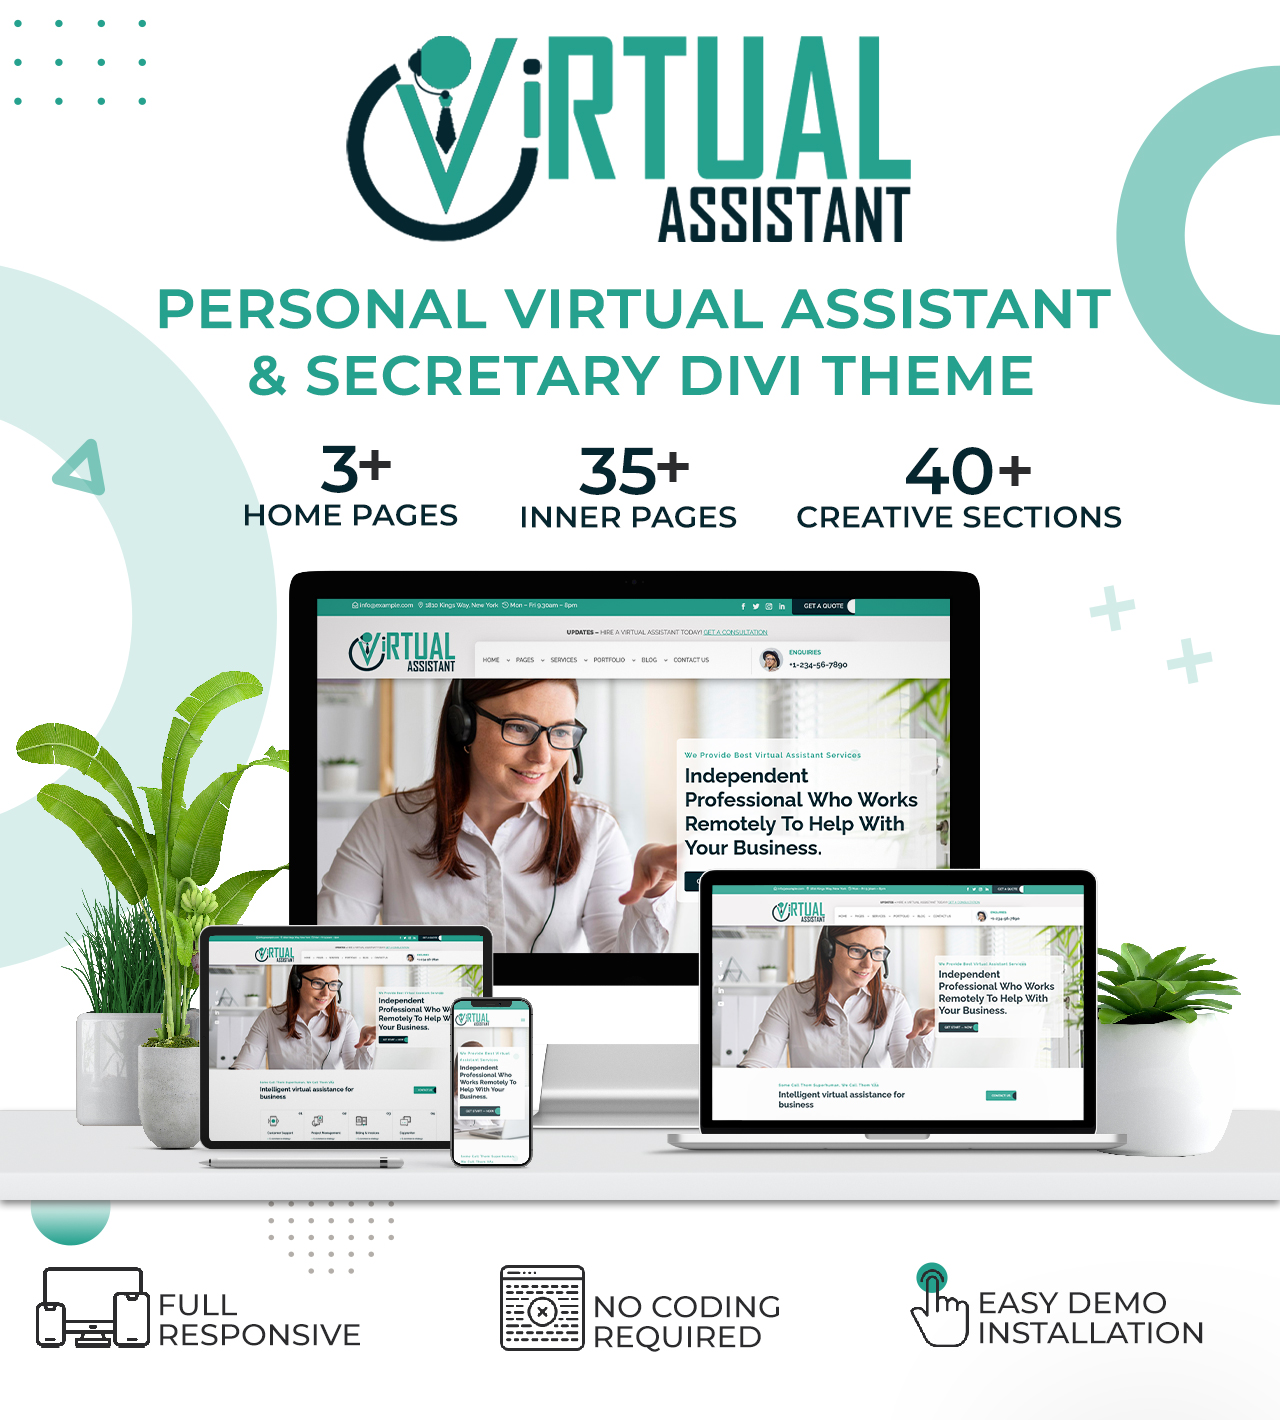 divi virtual assistant service theme